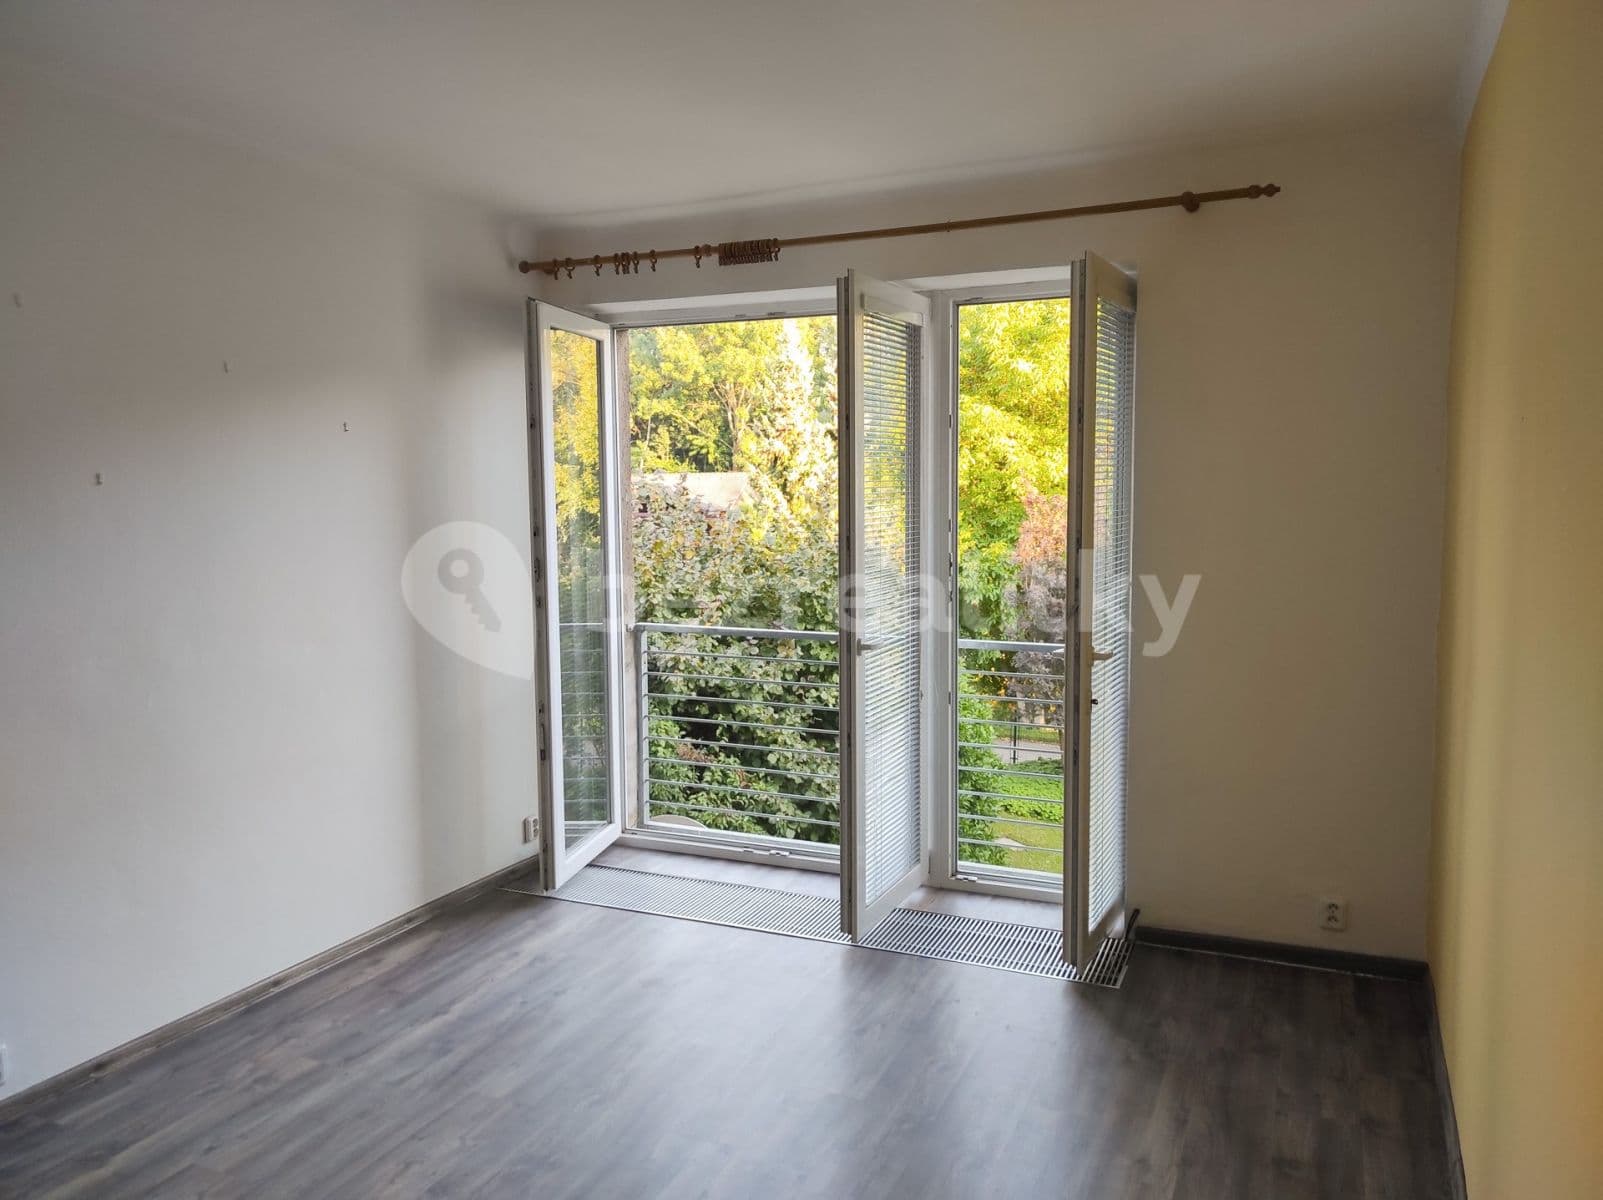 2 bedroom with open-plan kitchen flat to rent, 85 m², Slovanské údolí, Plzeň, Plzeňský Region